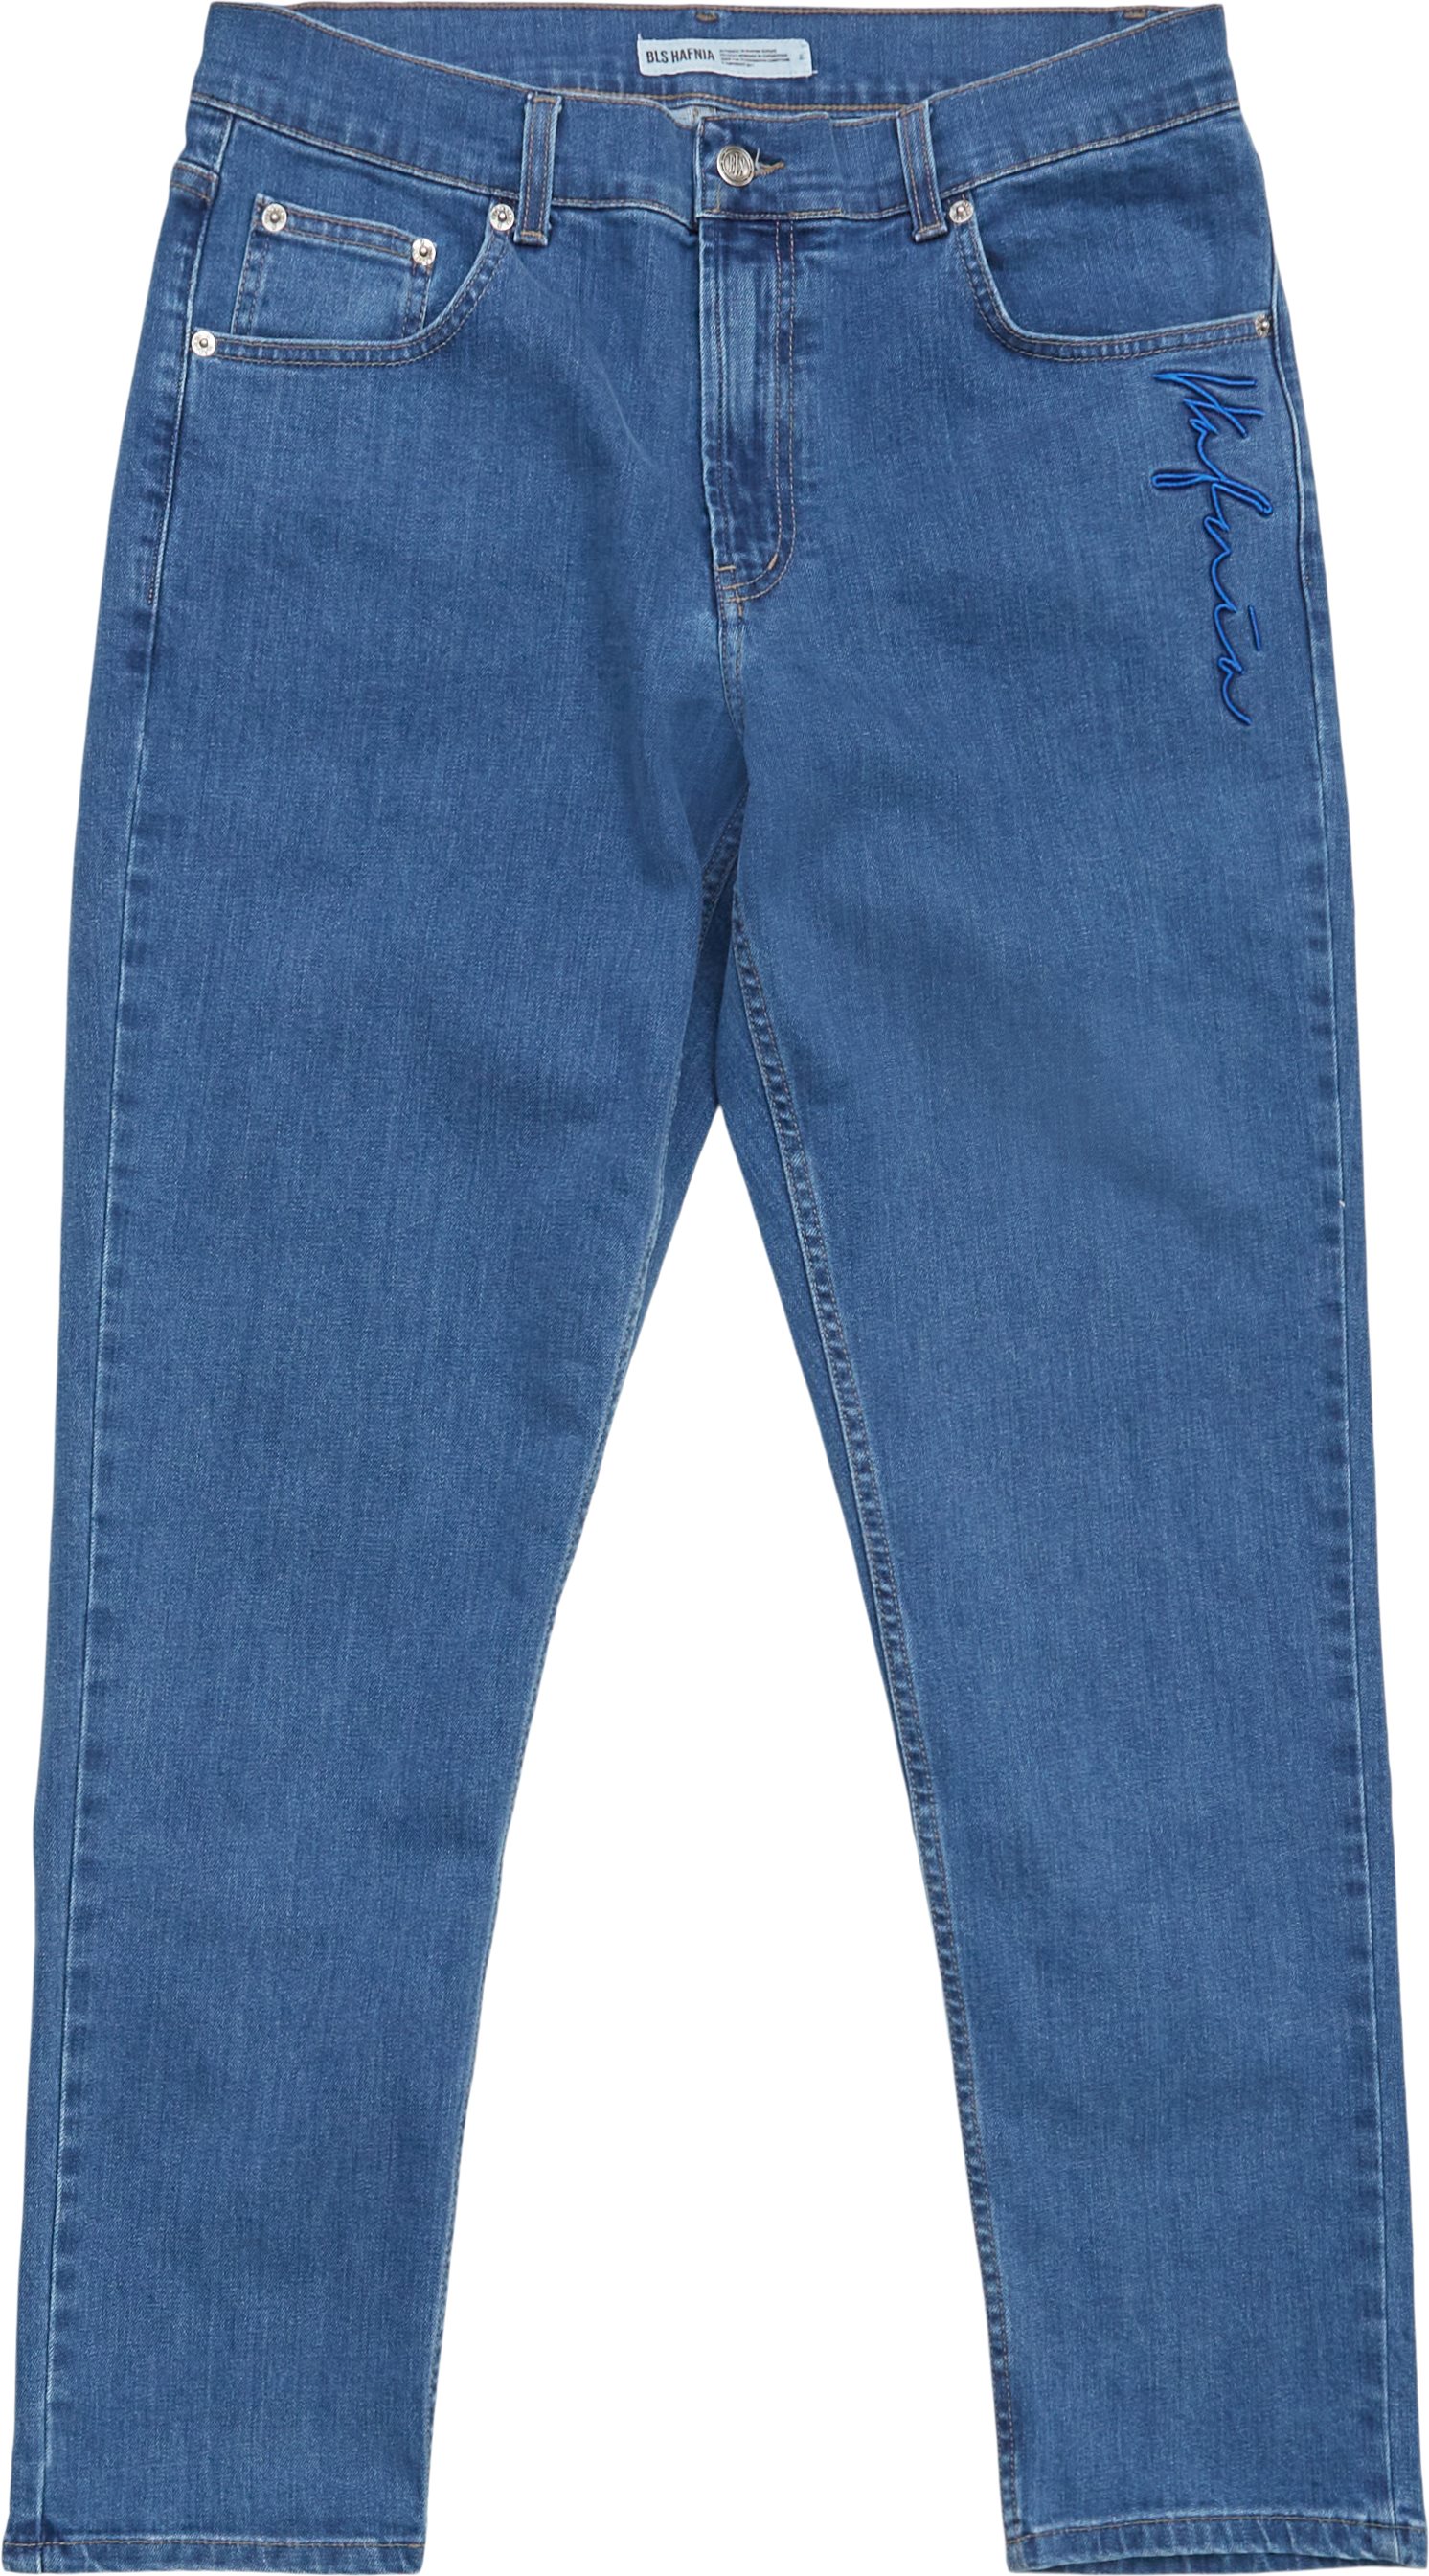 Jeans - Regular fit - Blå